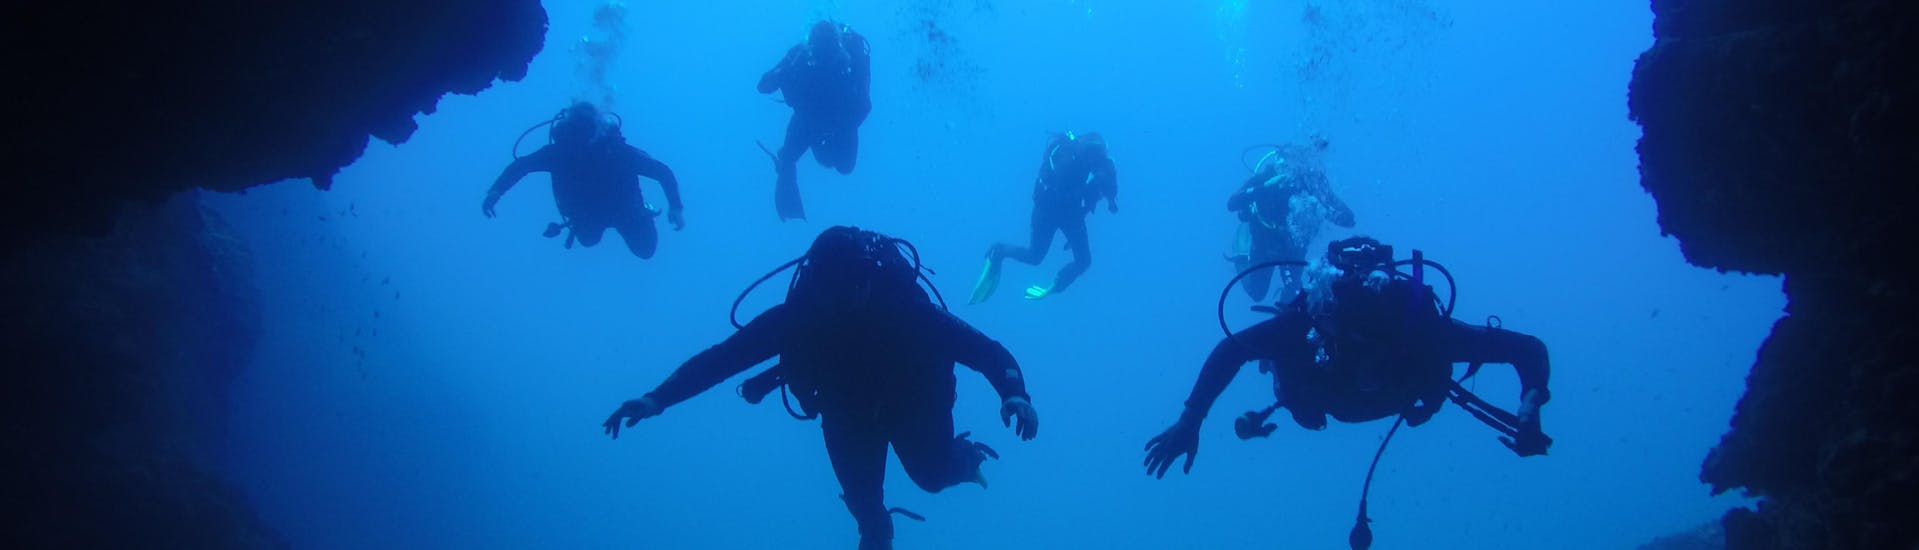 Formation de plongée (PADI) à Dubrovnik pour Débutants avec Diving Center Blue Planet Dubrovnik.